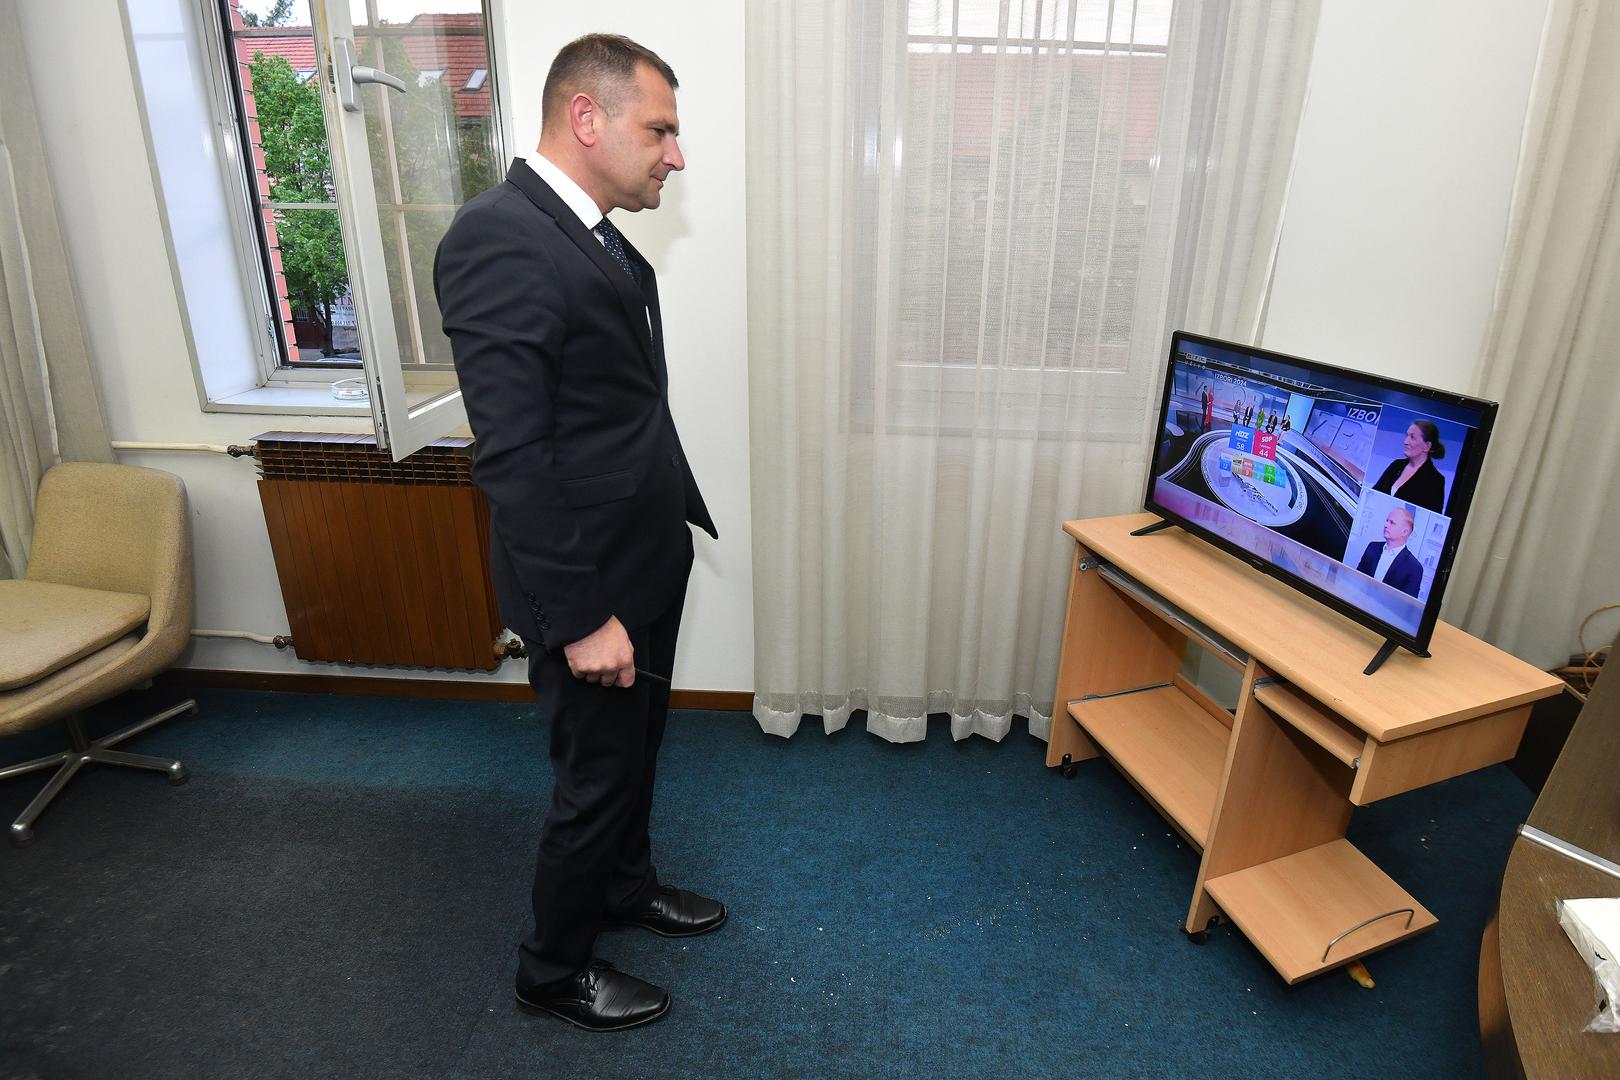 Međimurski župan Matija Posavec iščekuje rezultate izlaznih anketa, koje su mu prvo prognozirale dva pa jedan mandat